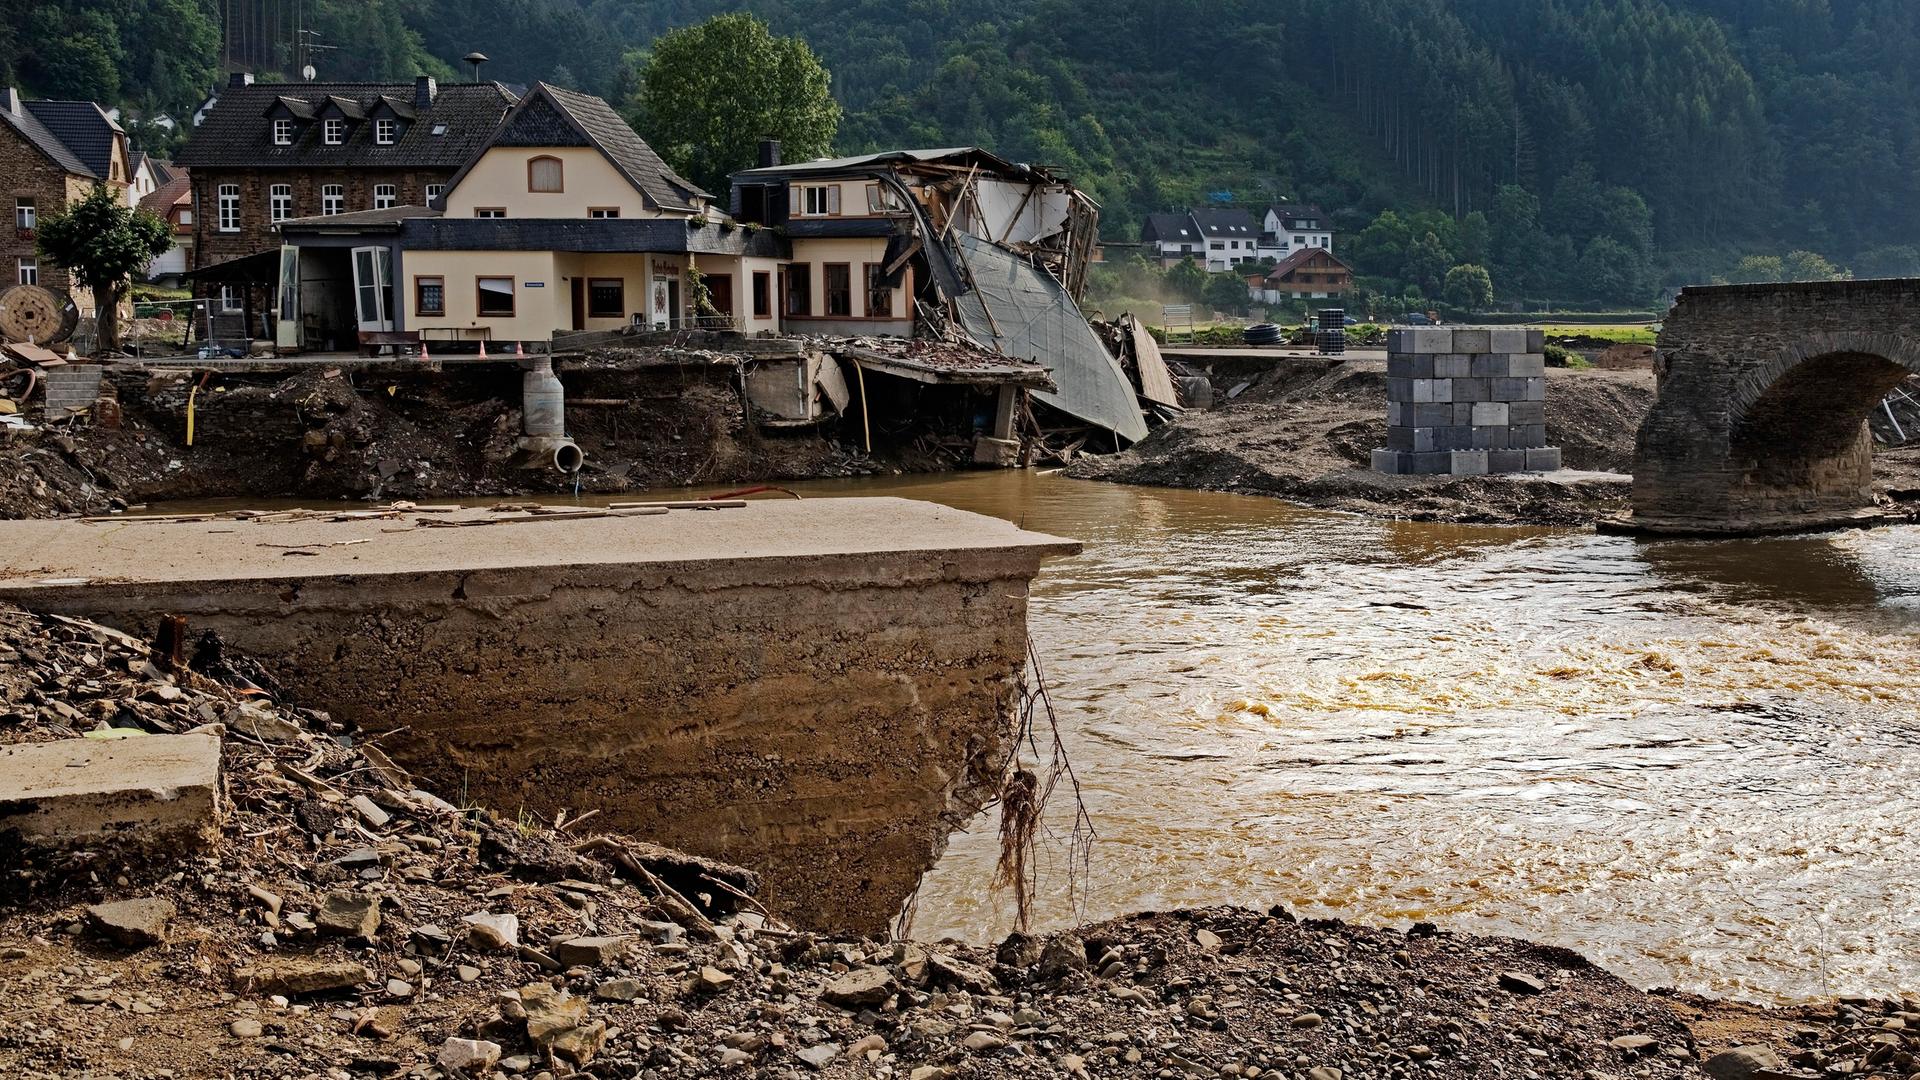 Blick auf die zerstörte Nepomuk-Brücke über den Fluss Ahr in Rheinland-Pfalz